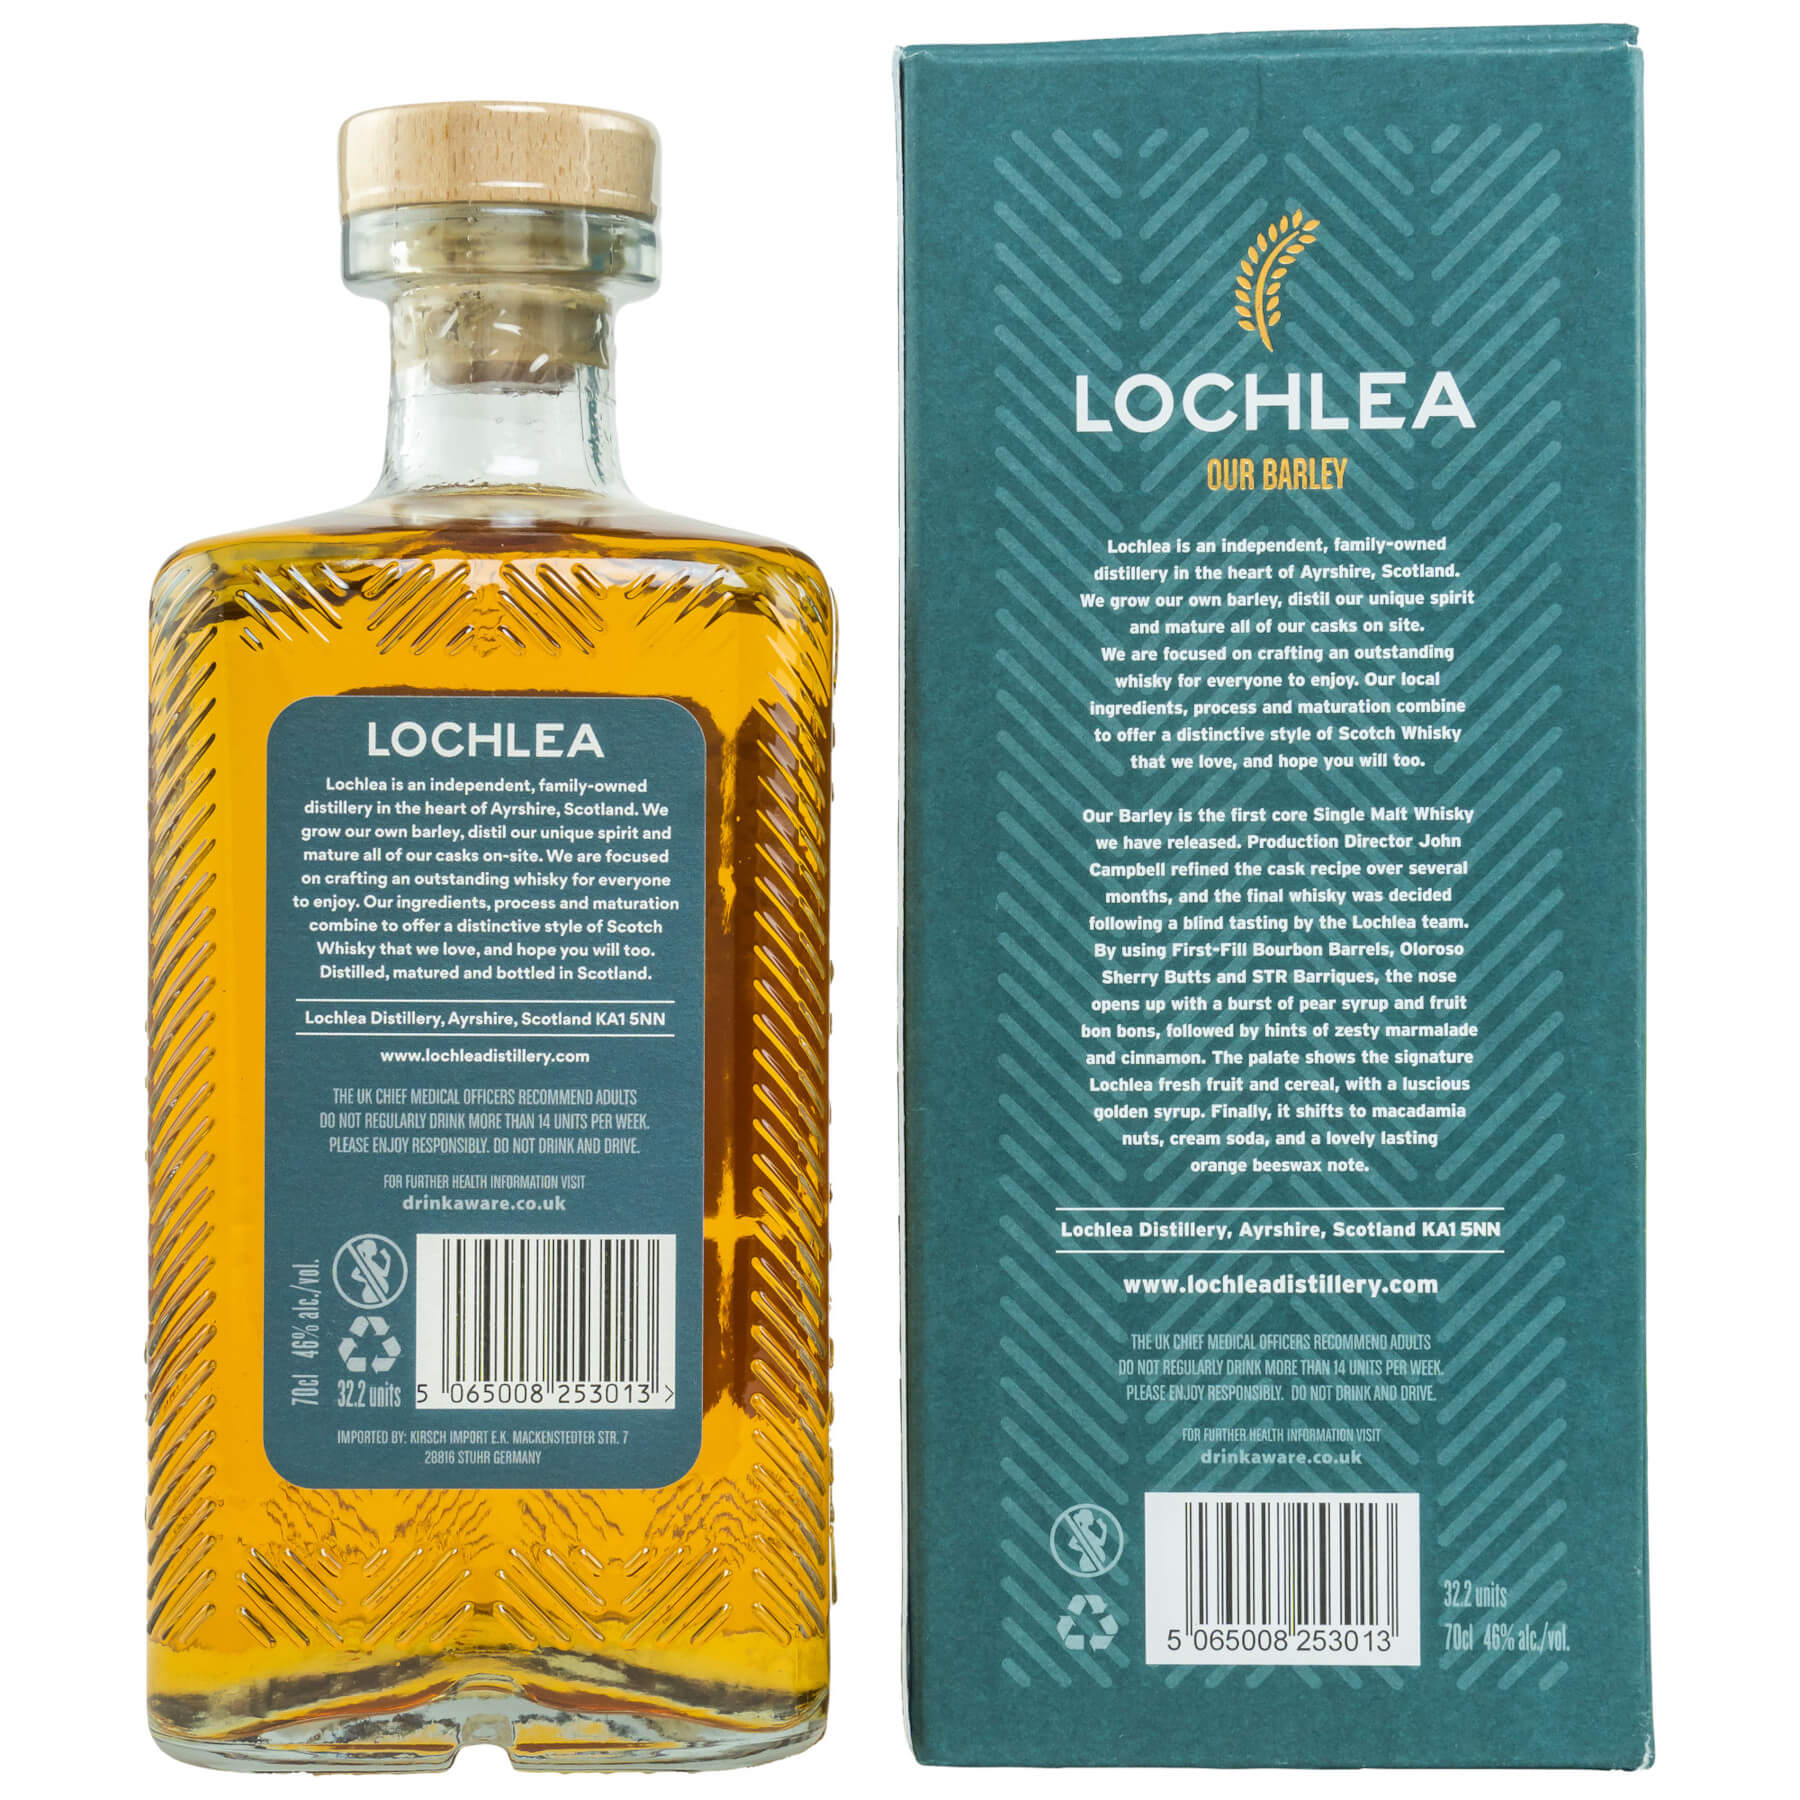 Eckige Flasche und Verpackung Lochlea Our Barley Whisky Rückseite